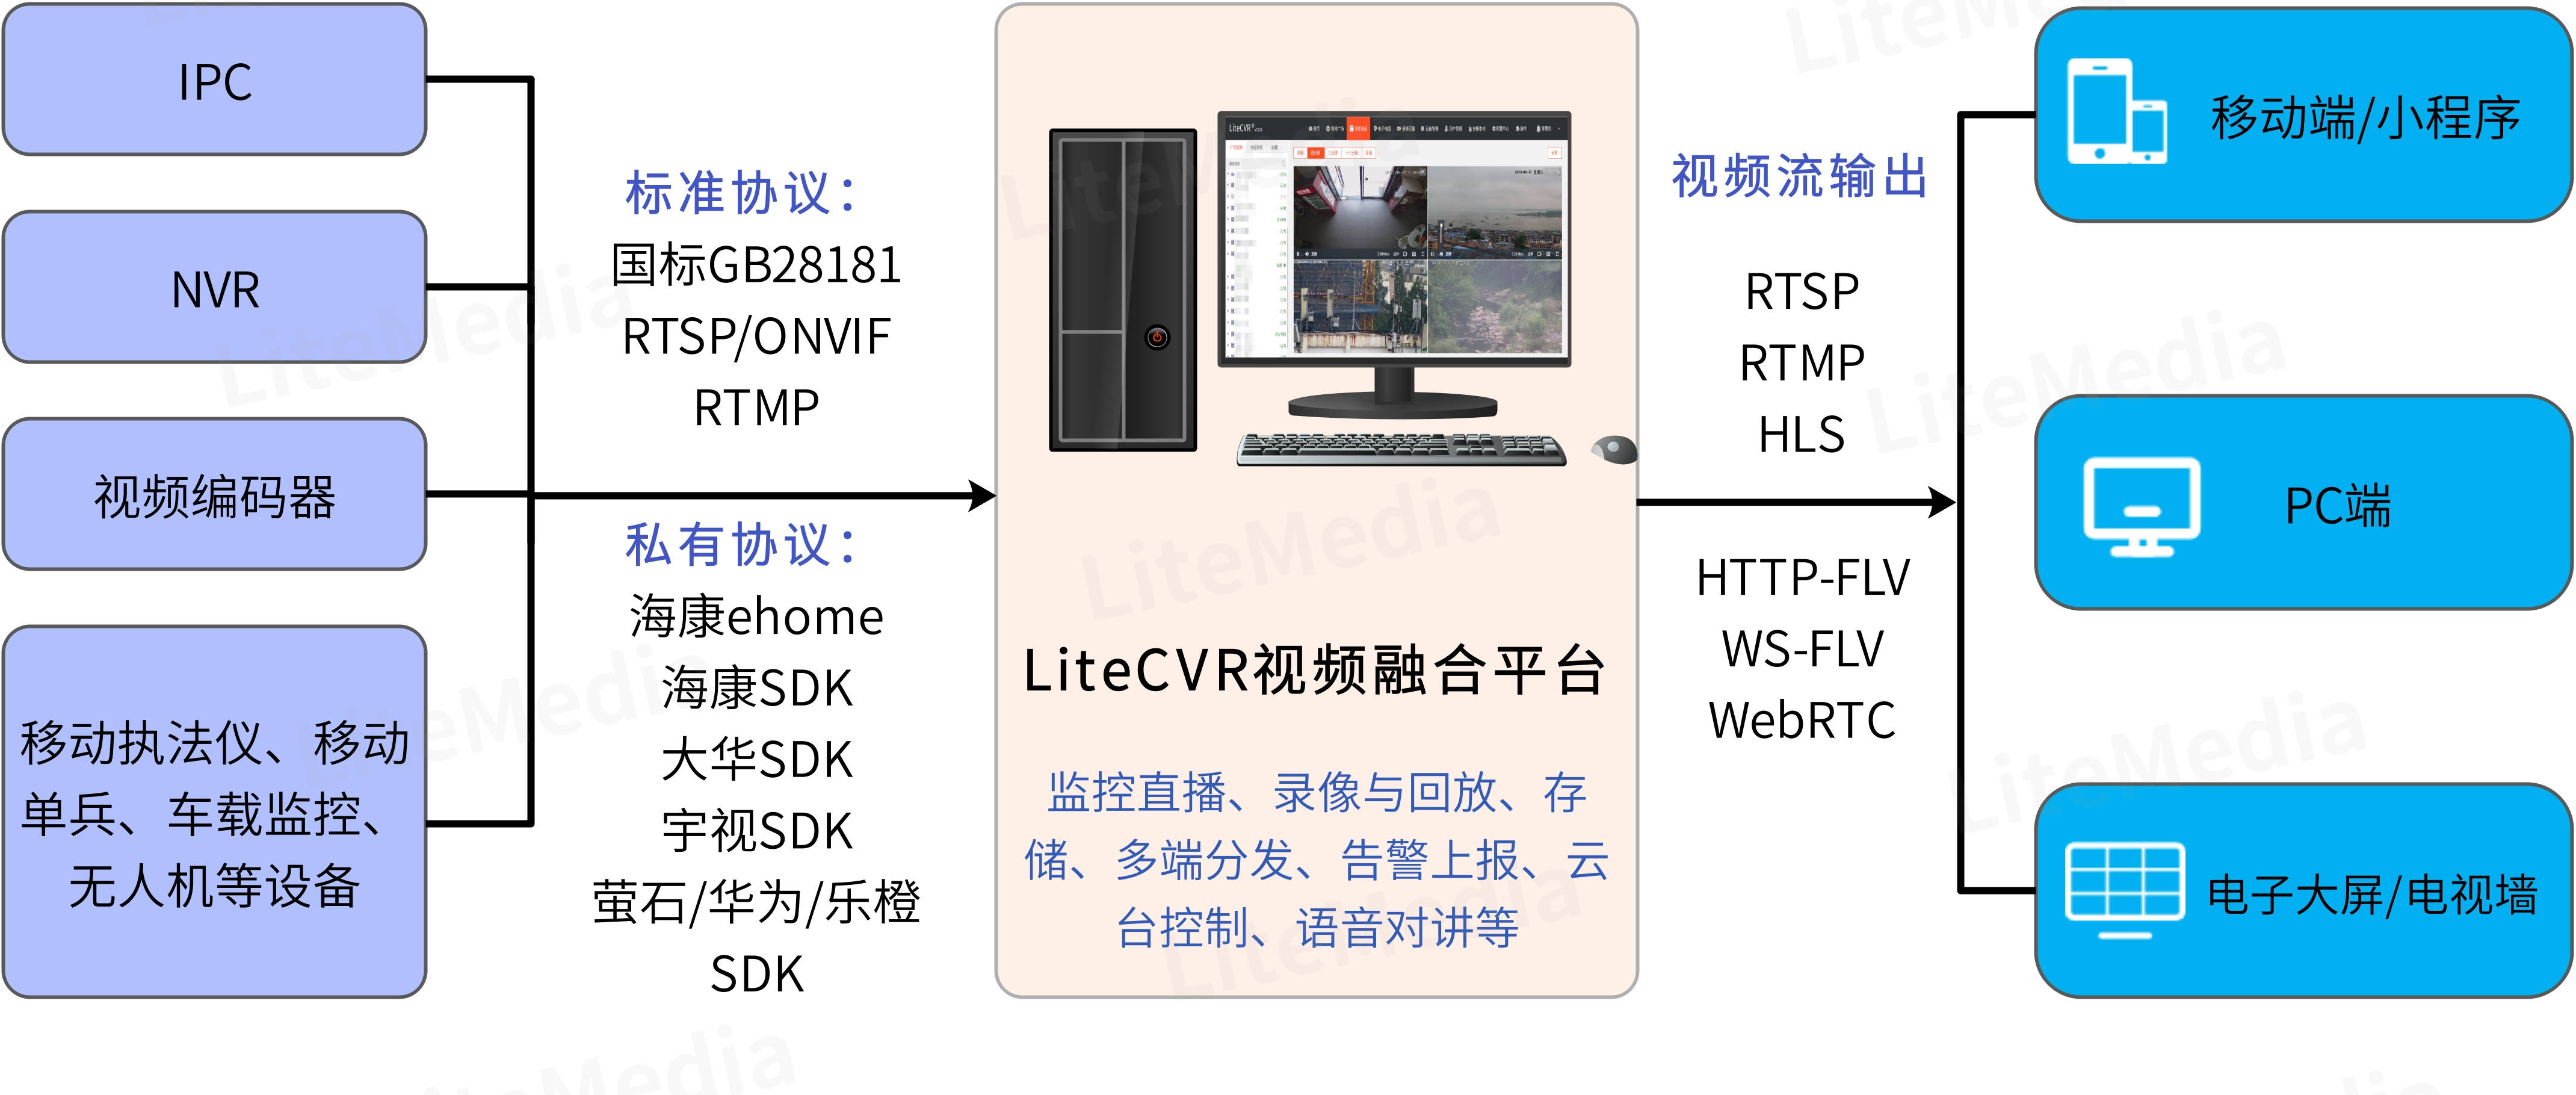 硬盘录像机无法注册安防监控视频平台LiteCVR的原因：端口未开放_视频监控